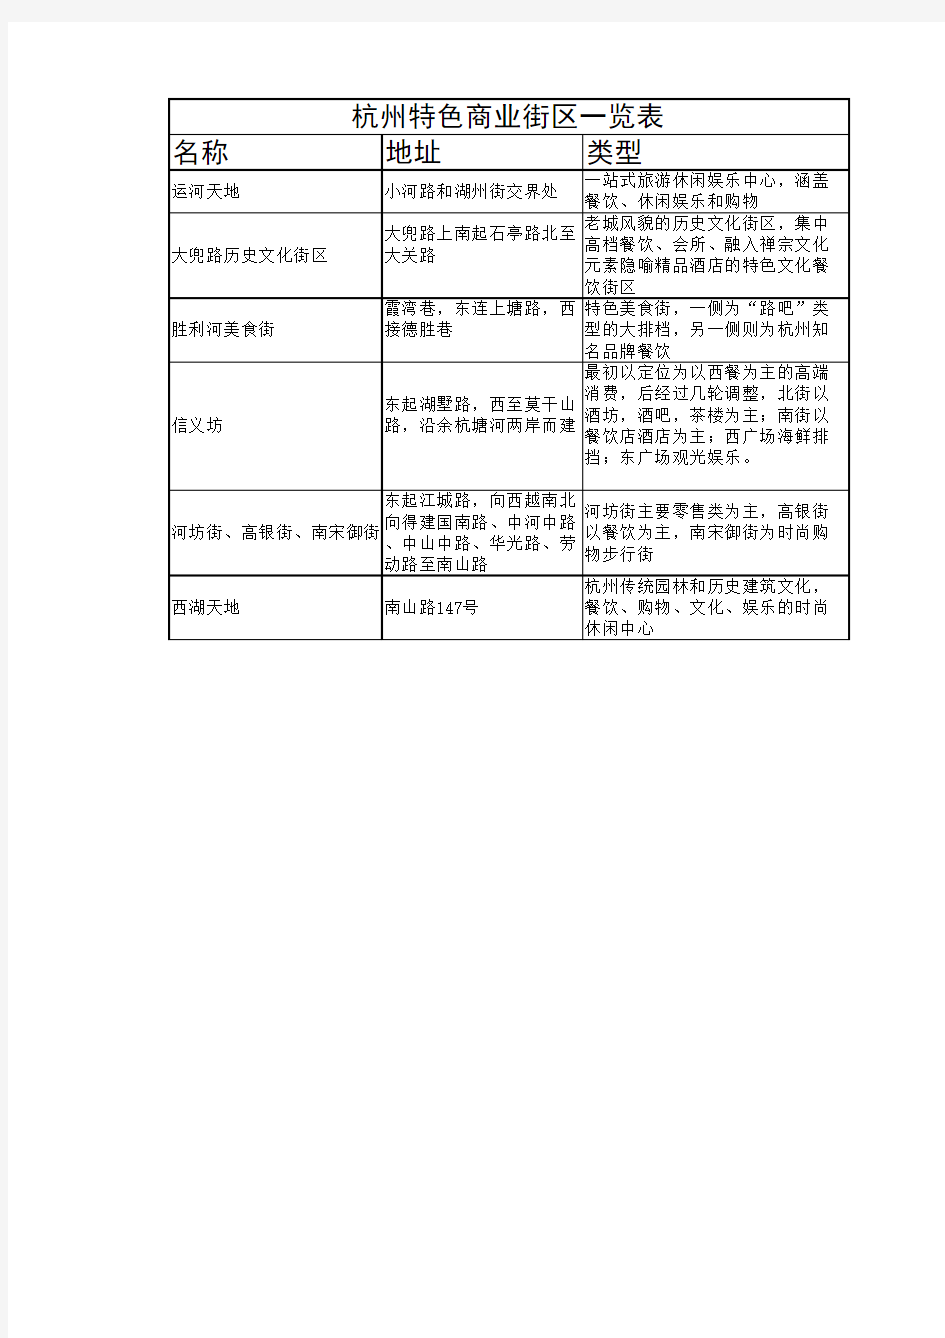 杭州特色商业街区一览表